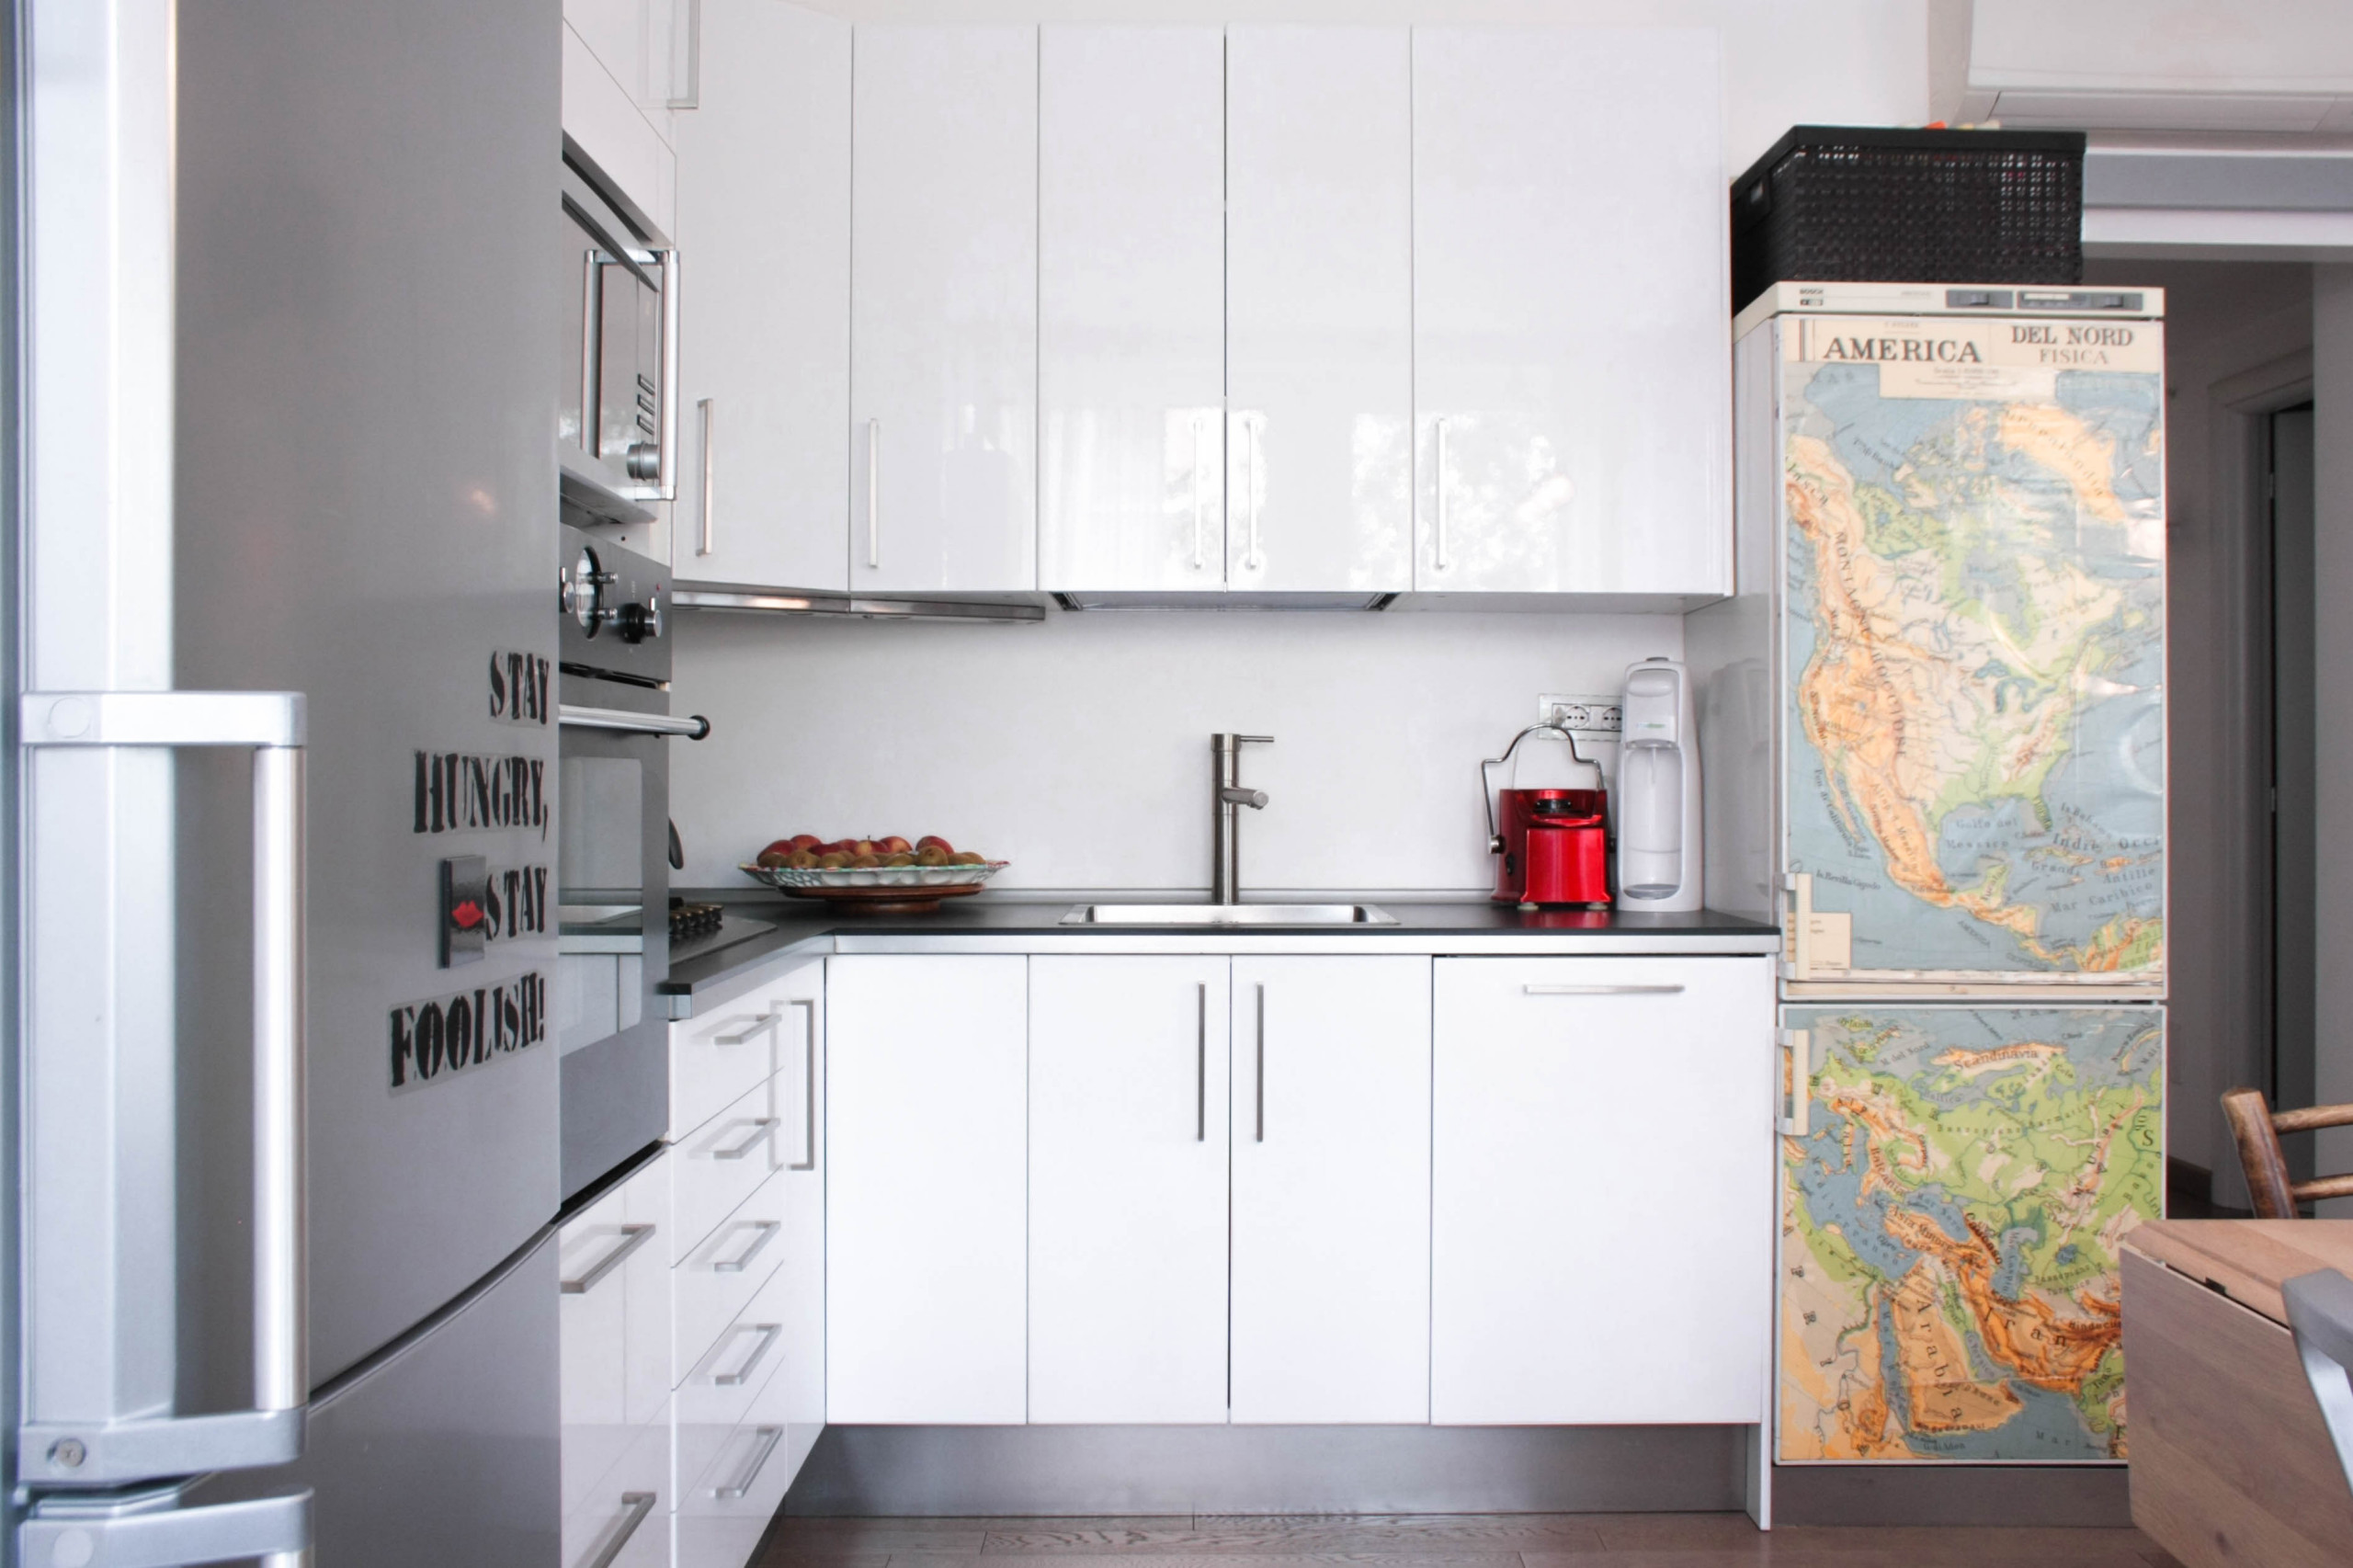 двойной холодильник в интерьере кухни фото